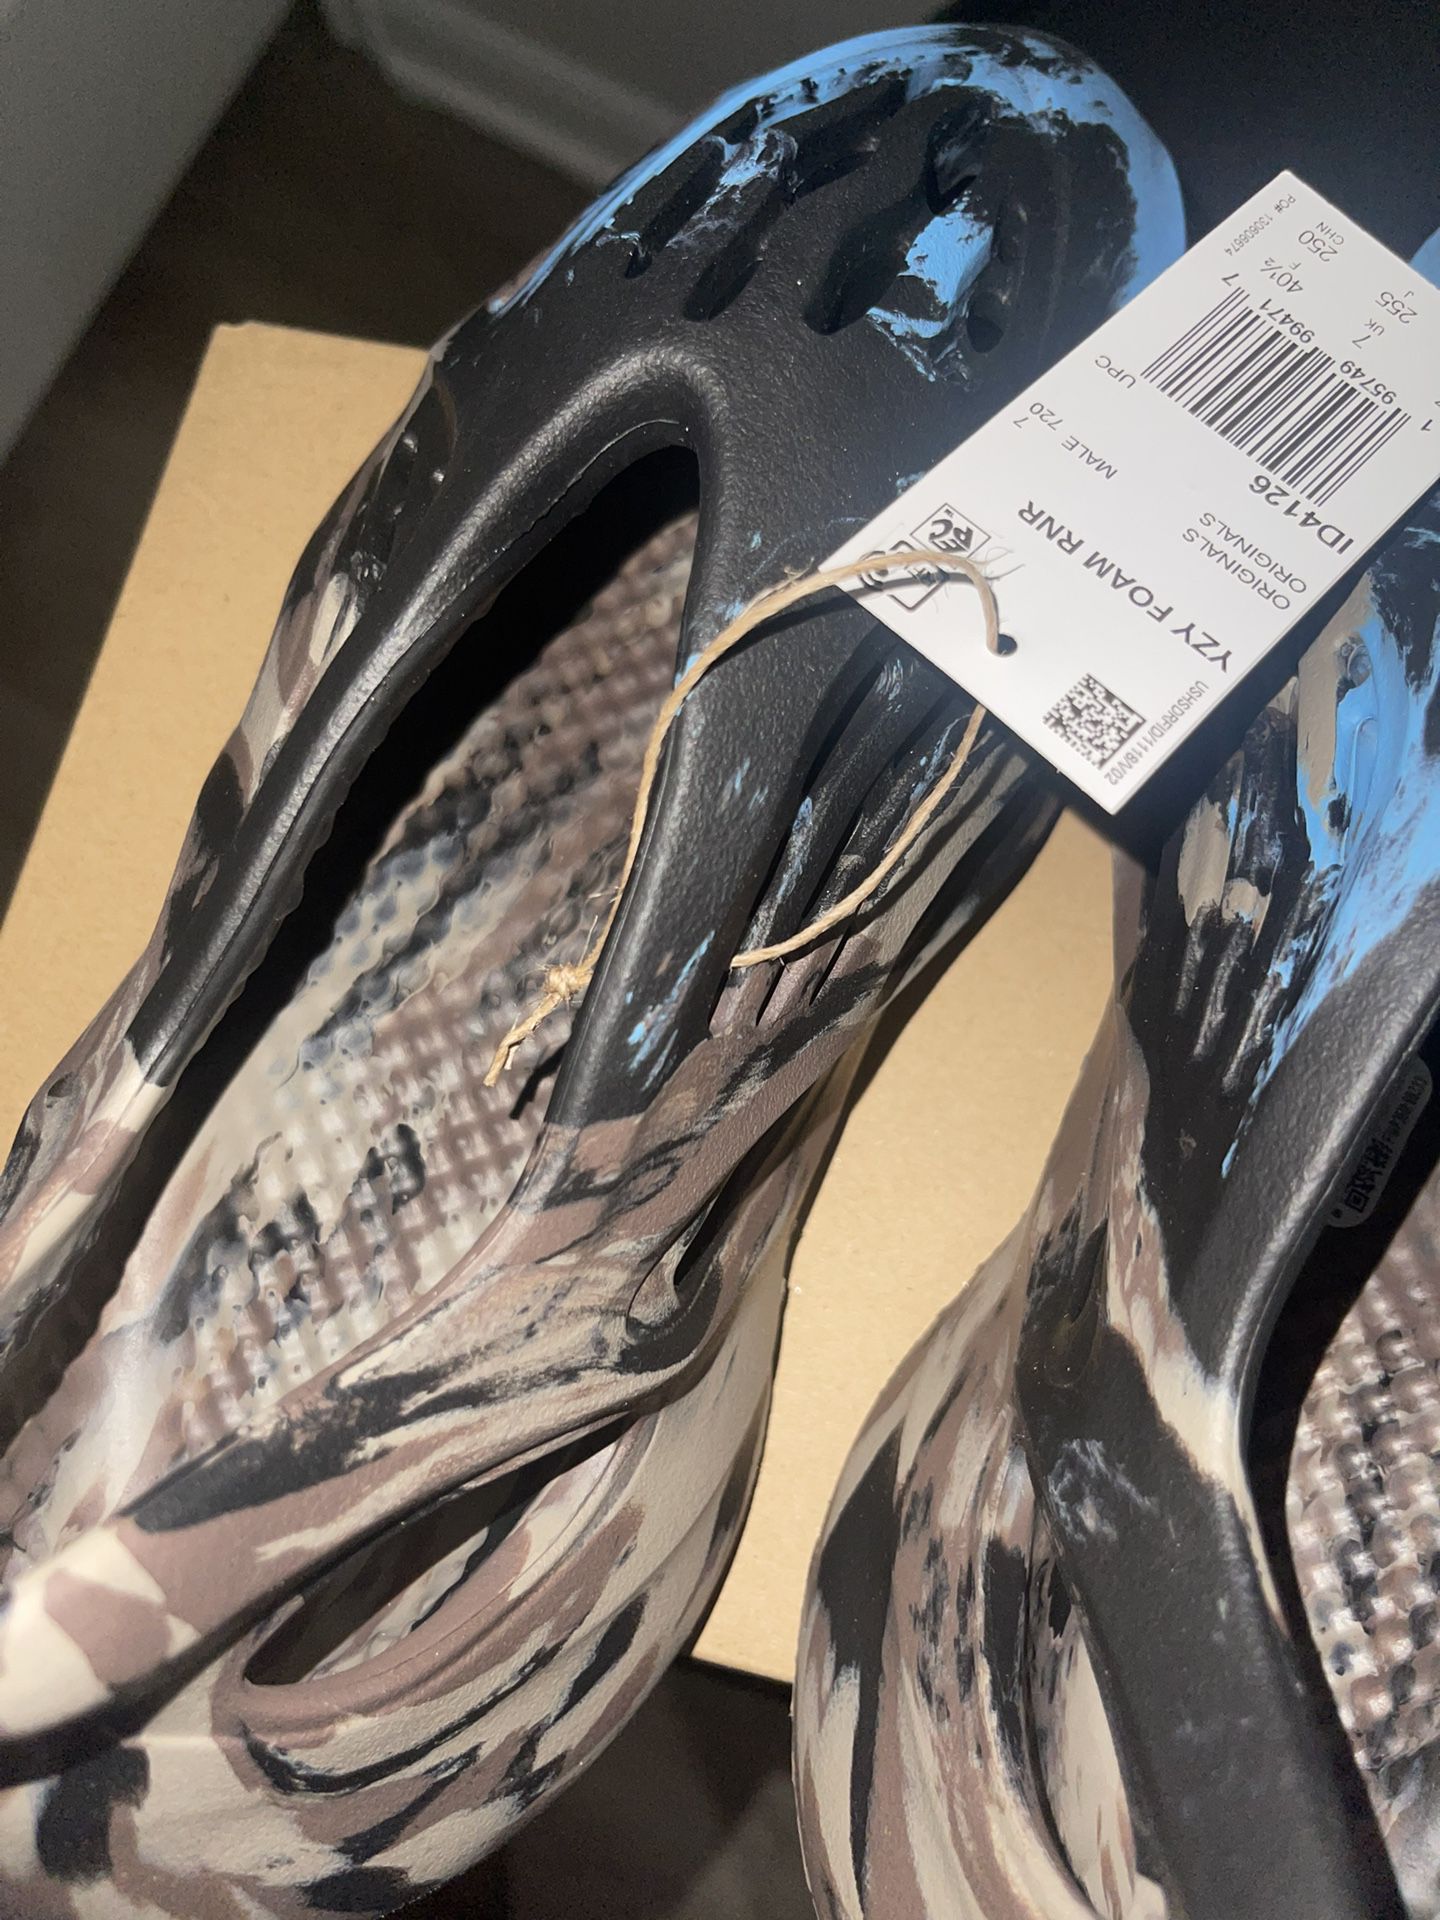 Adidas Yeezy Foam Runner Carbon Black *Legit* for Sale in Flower Mound, TX  - OfferUp